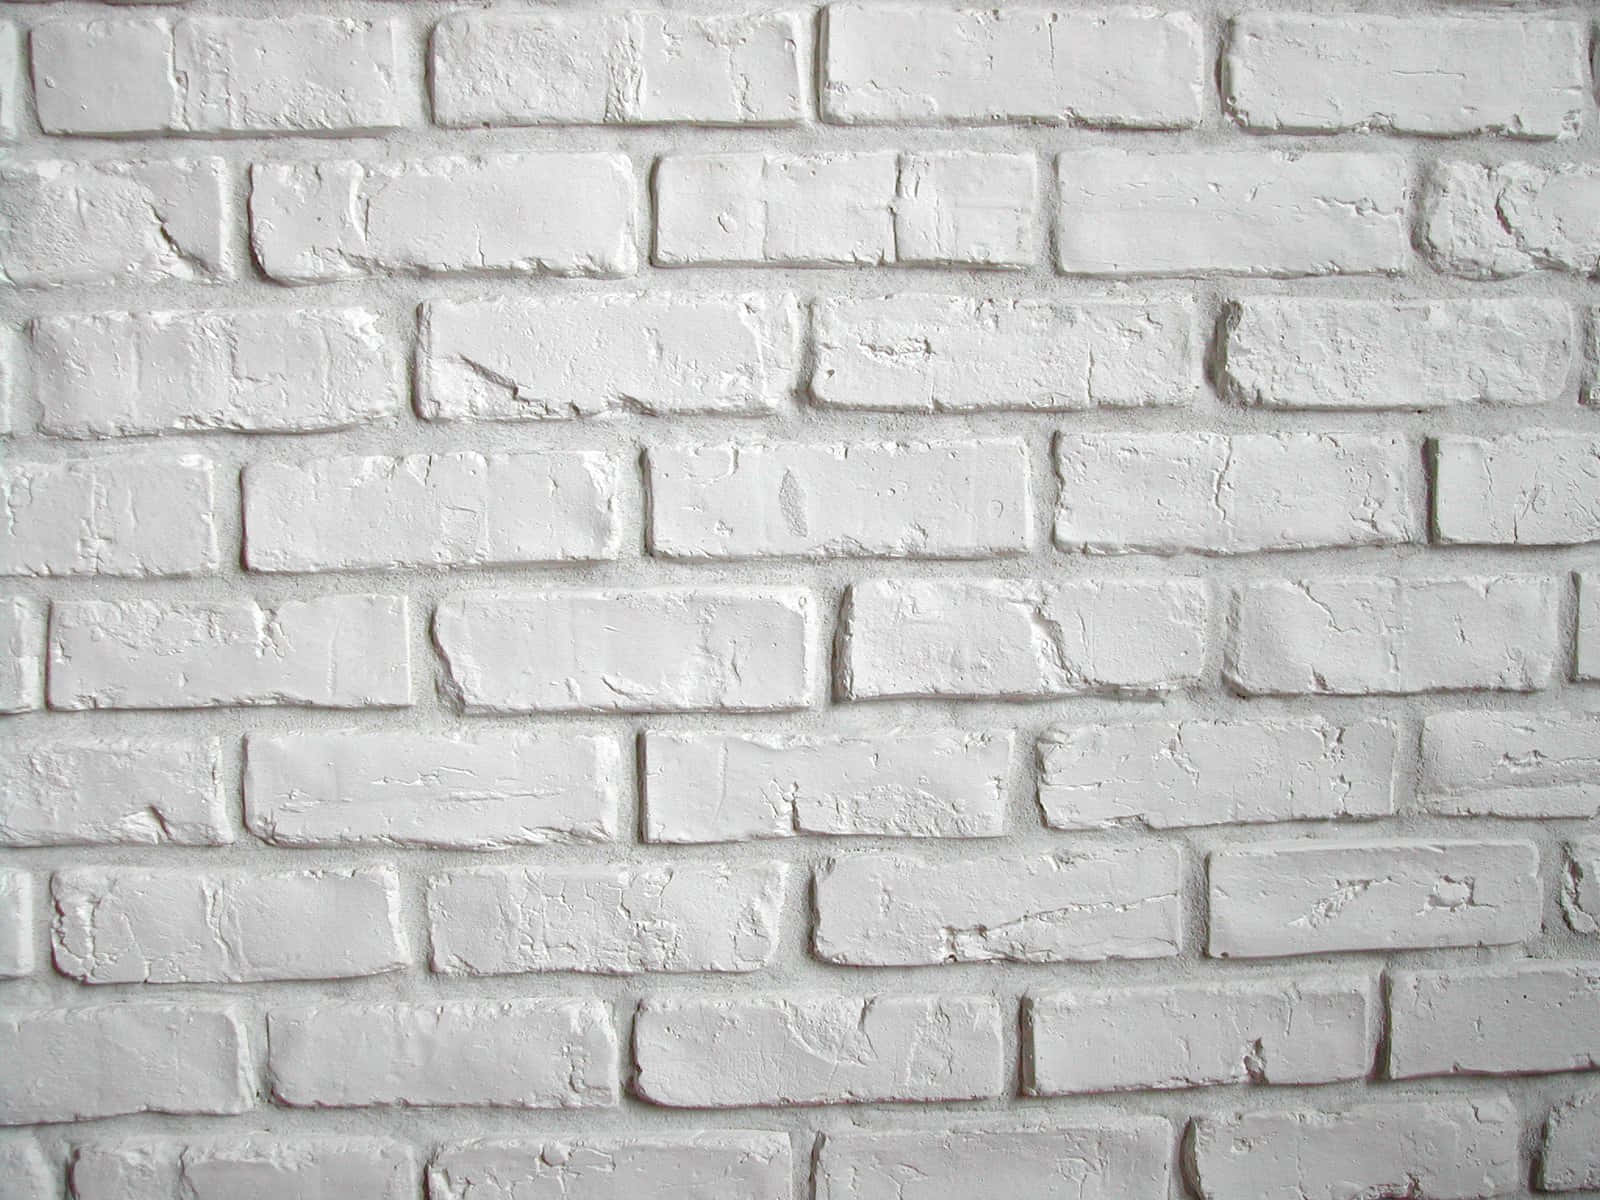 Immaginedi Un Muro Di Mattoni Dipinto Di Bianco